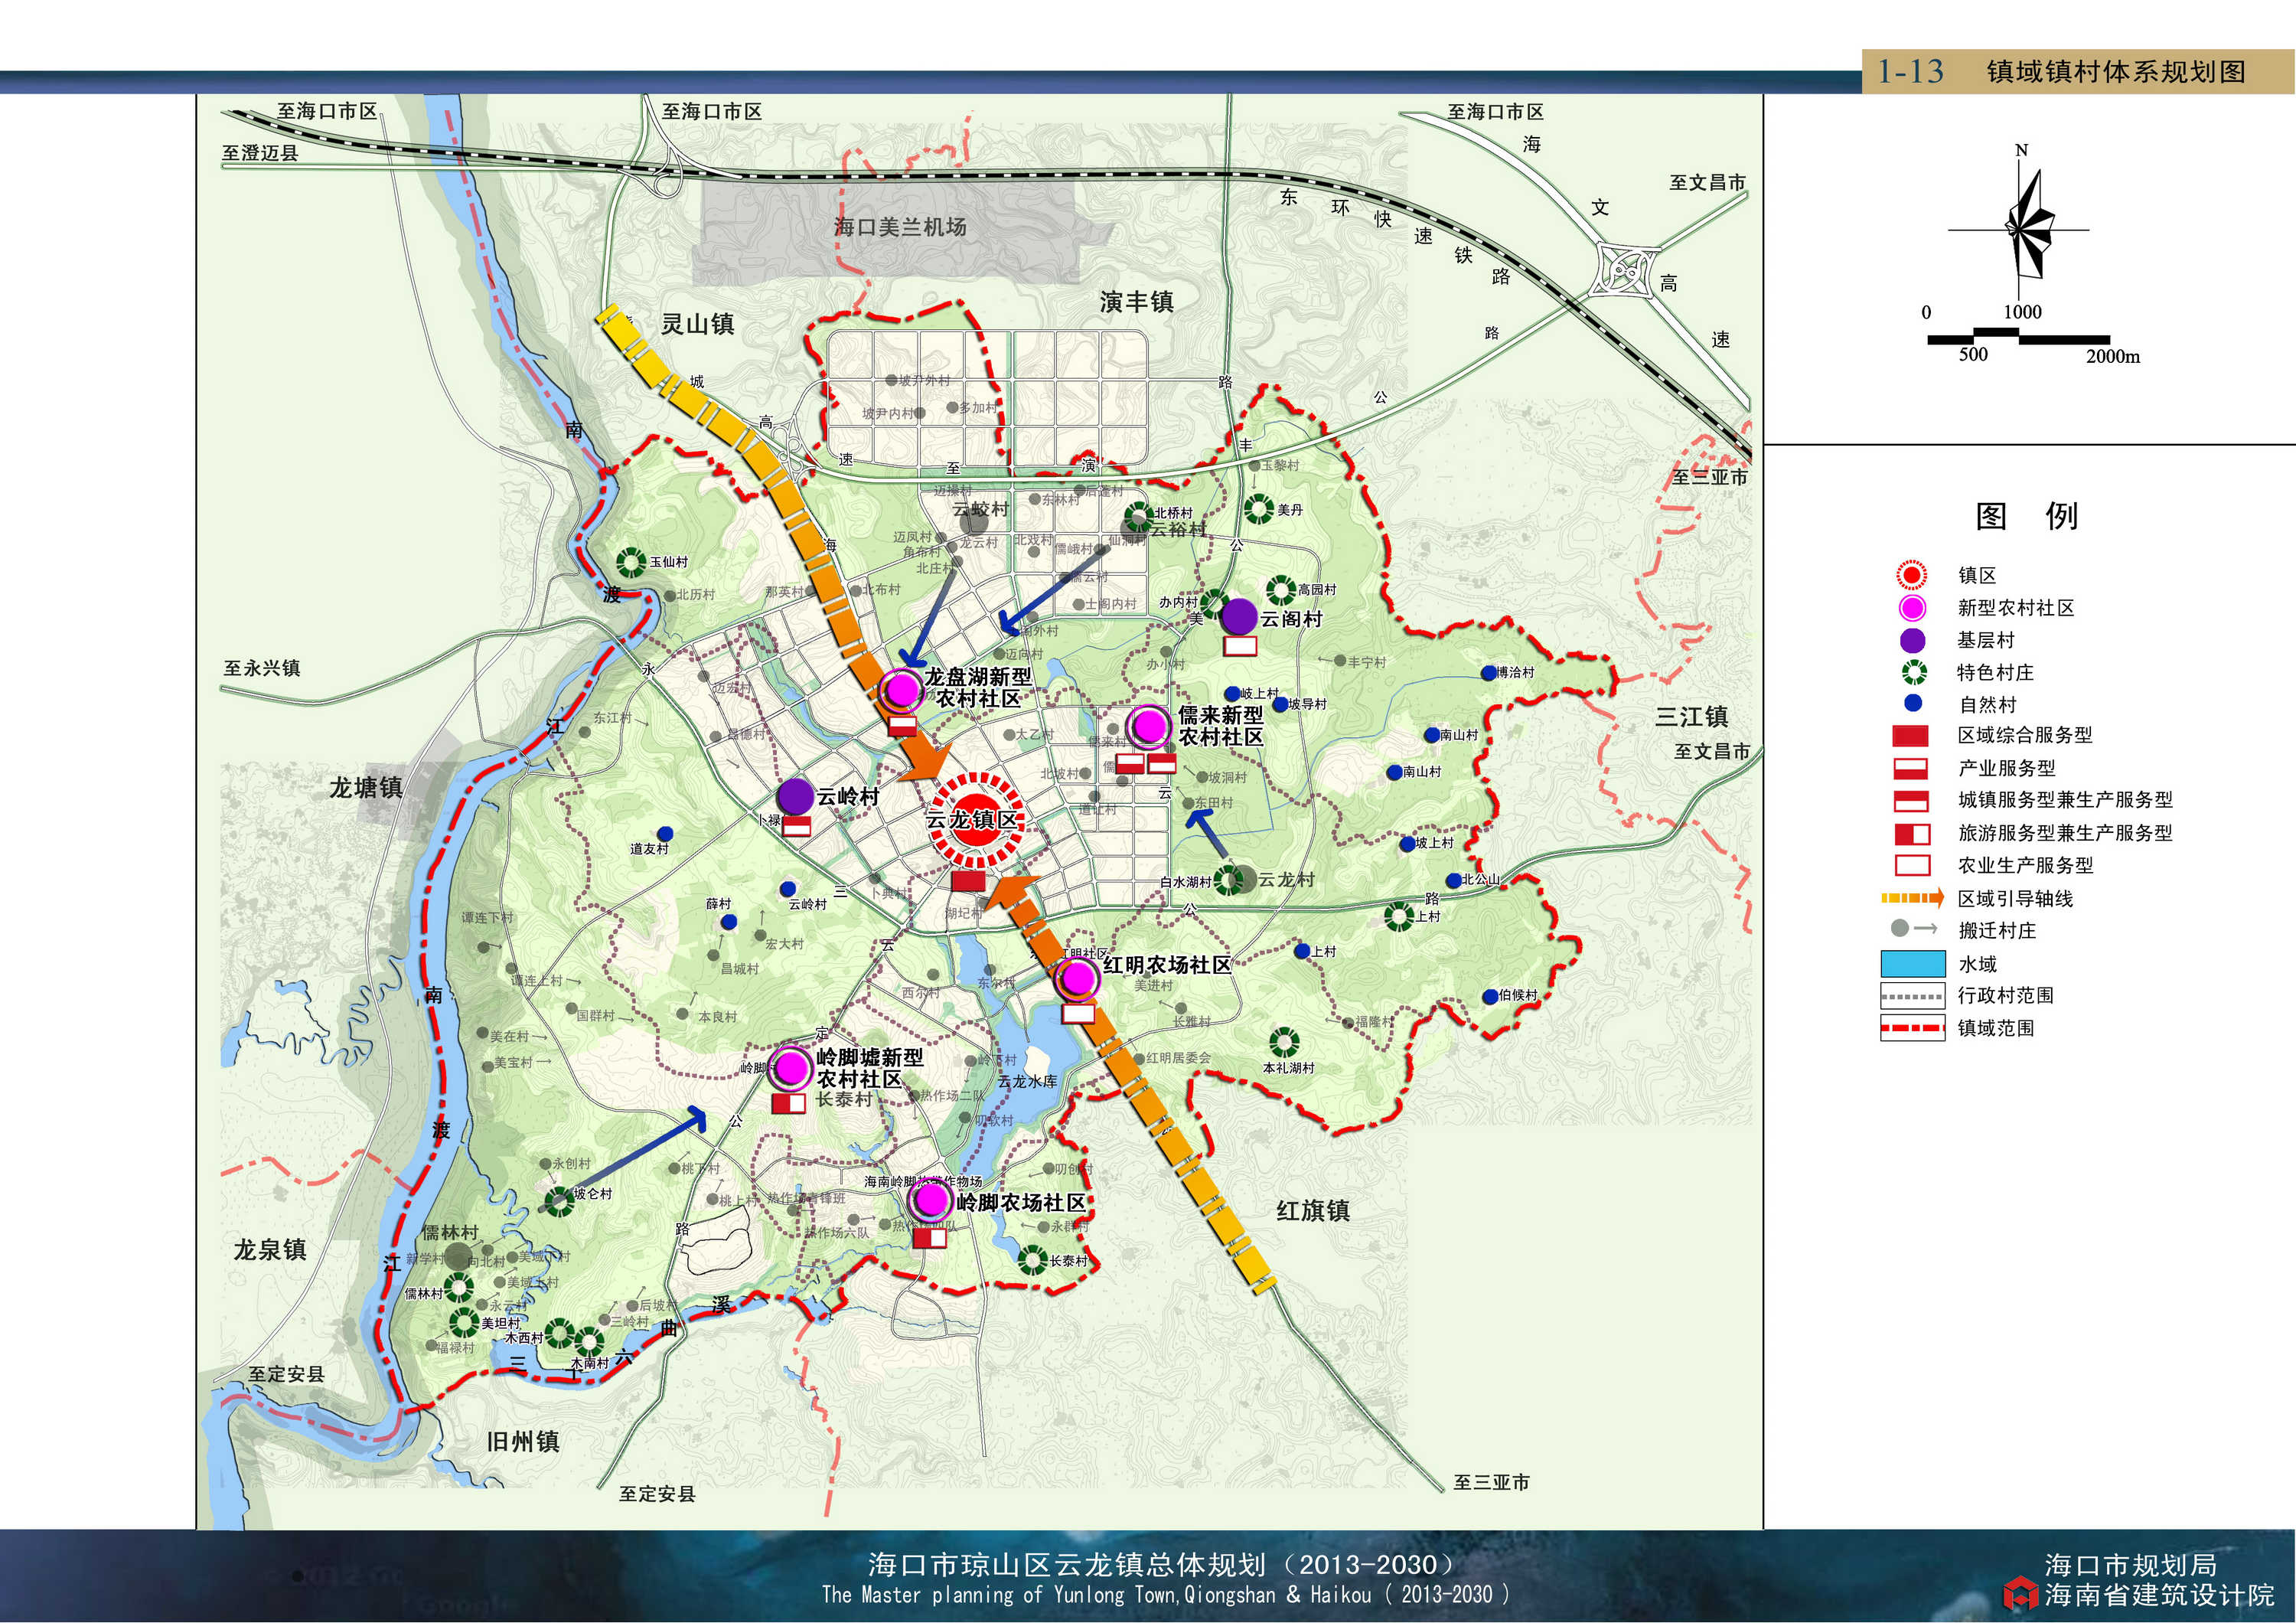 69 各地城市规划与公众参与 69 海南省城市规划 69 海口市琼山